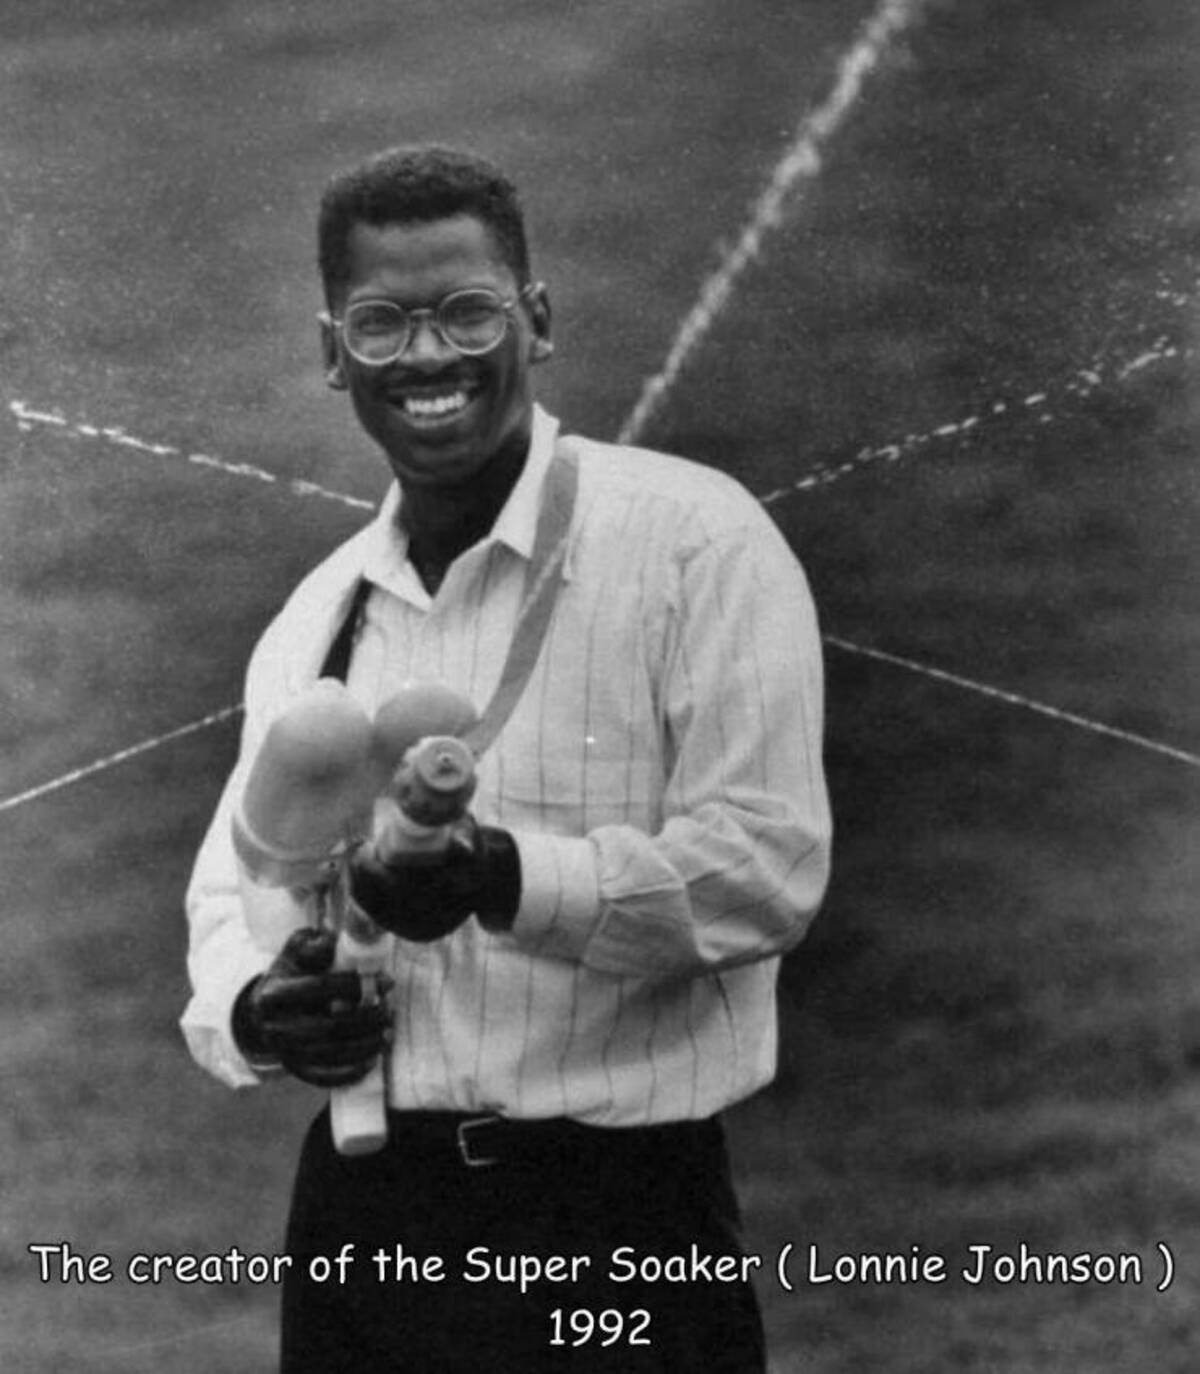 lonnie johnson super soaker - The creator of the Super Soaker Lonnie Johnson 1992